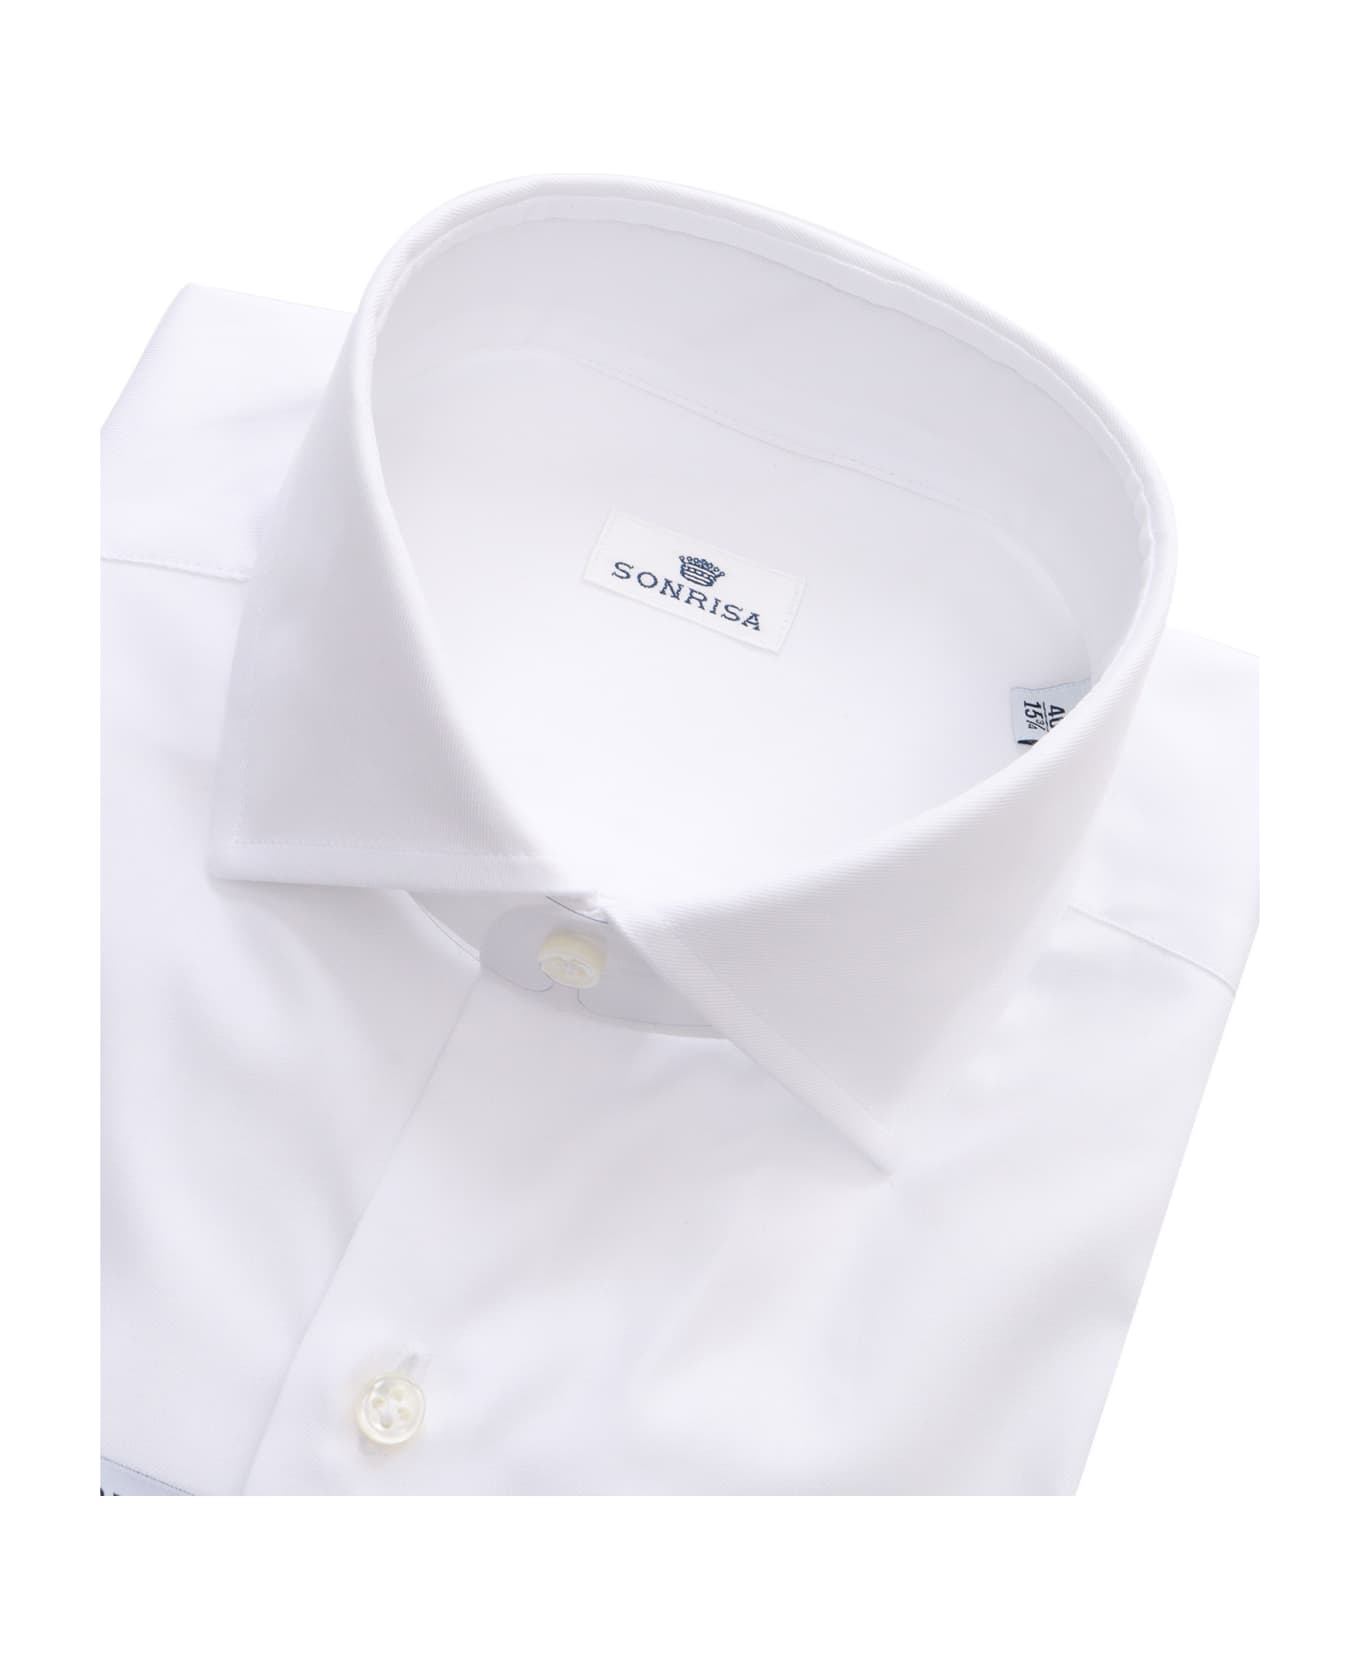 Sonrisa Classic Shirt - WHITE